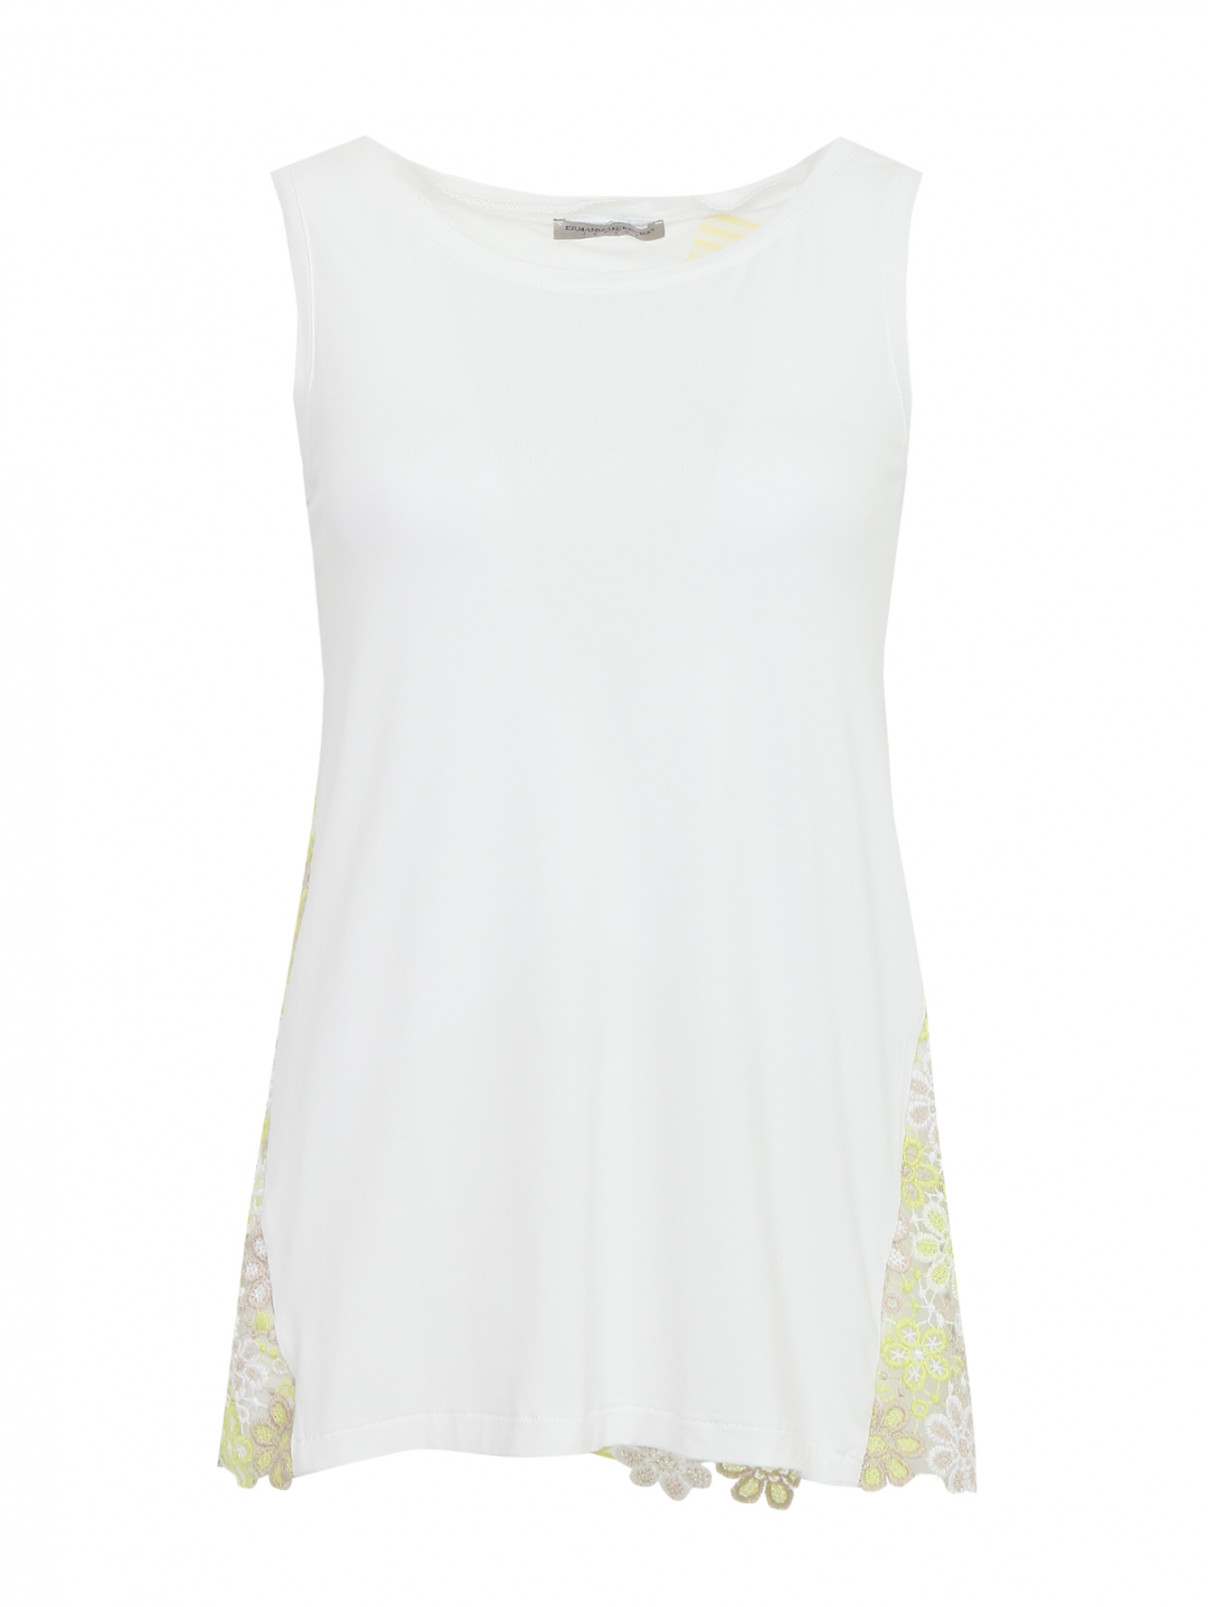 Блуза без рукавов с круглым вырезом декорированная кружевом Ermanno Scervino Junior  –  Общий вид  – Цвет:  Белый